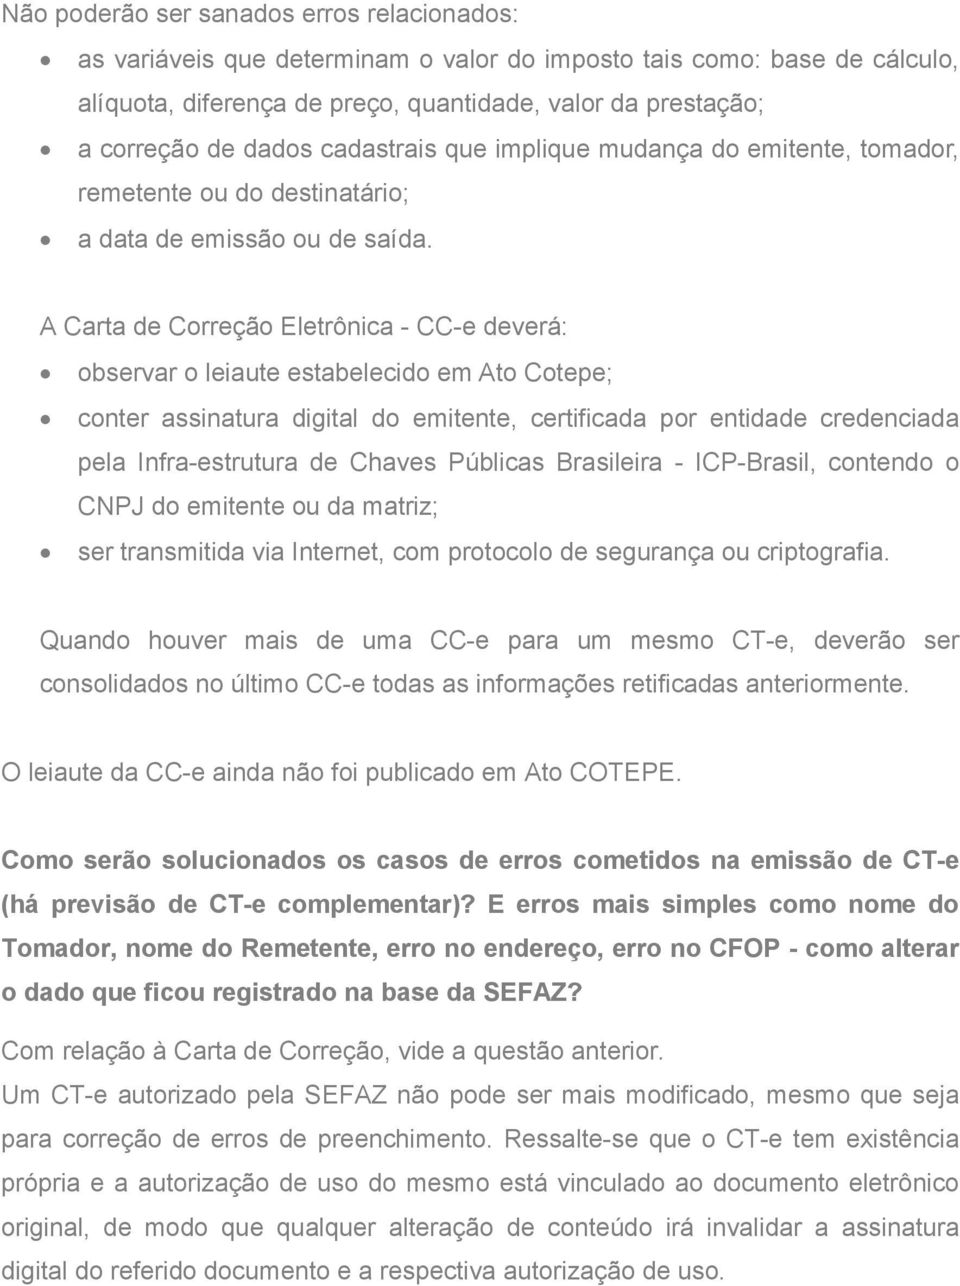 A Carta de Correção Eletrônica - CC-e deverá: observar o leiaute estabelecido em Ato Cotepe; conter assinatura digital do emitente, certificada por entidade credenciada pela Infra-estrutura de Chaves